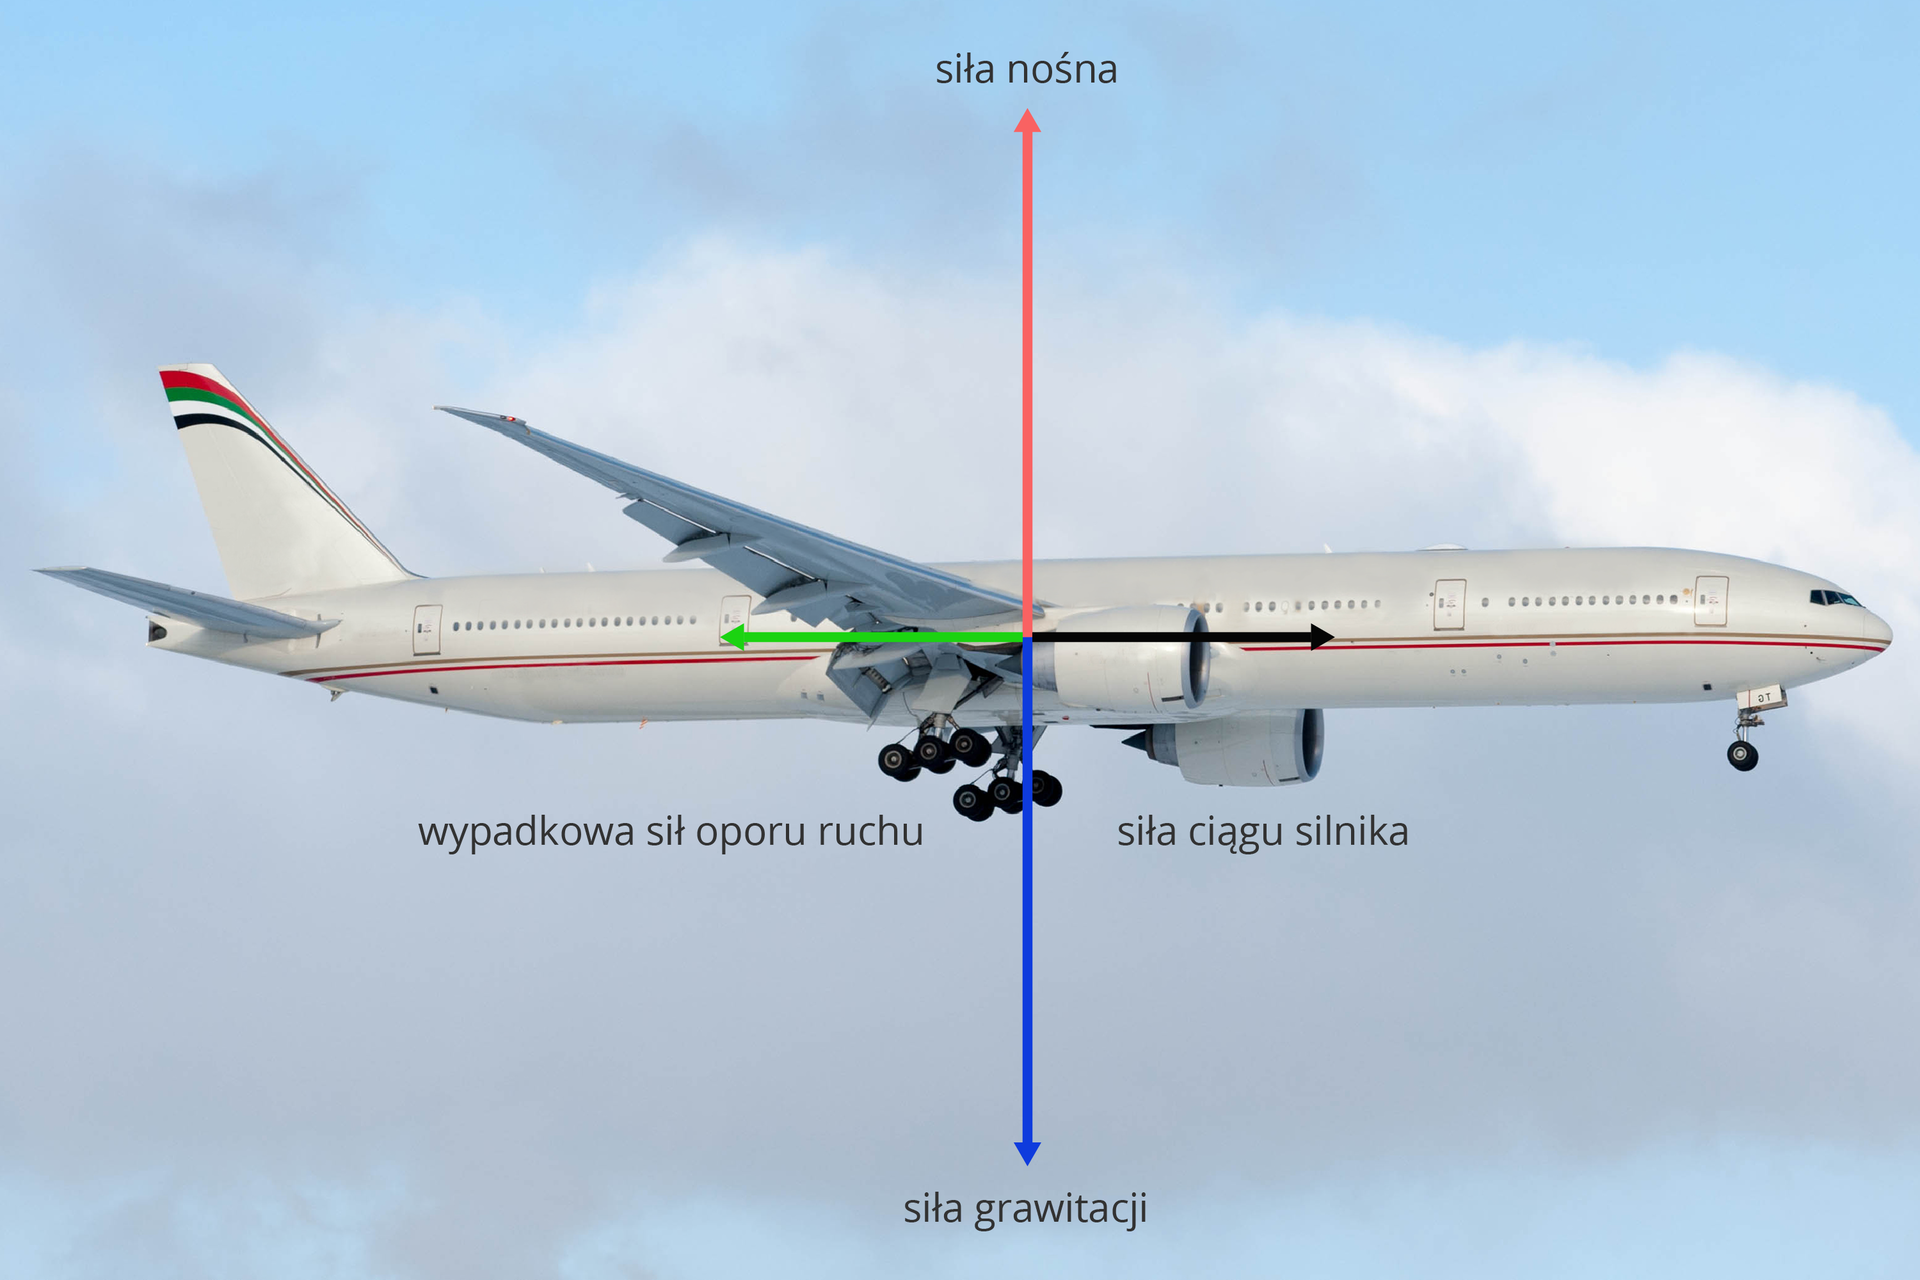 Zdjęcie samolotu w locie i dwie siły w postaci wektorów przyłożone do środka samolotu, pionowe, z przeciwnymi zwrotami, równymi długościami oraz dwie siły w postaci wektorów przyłożone do środka samolotu, poziome, z przeciwnymi zwrotami, równymi długościami.